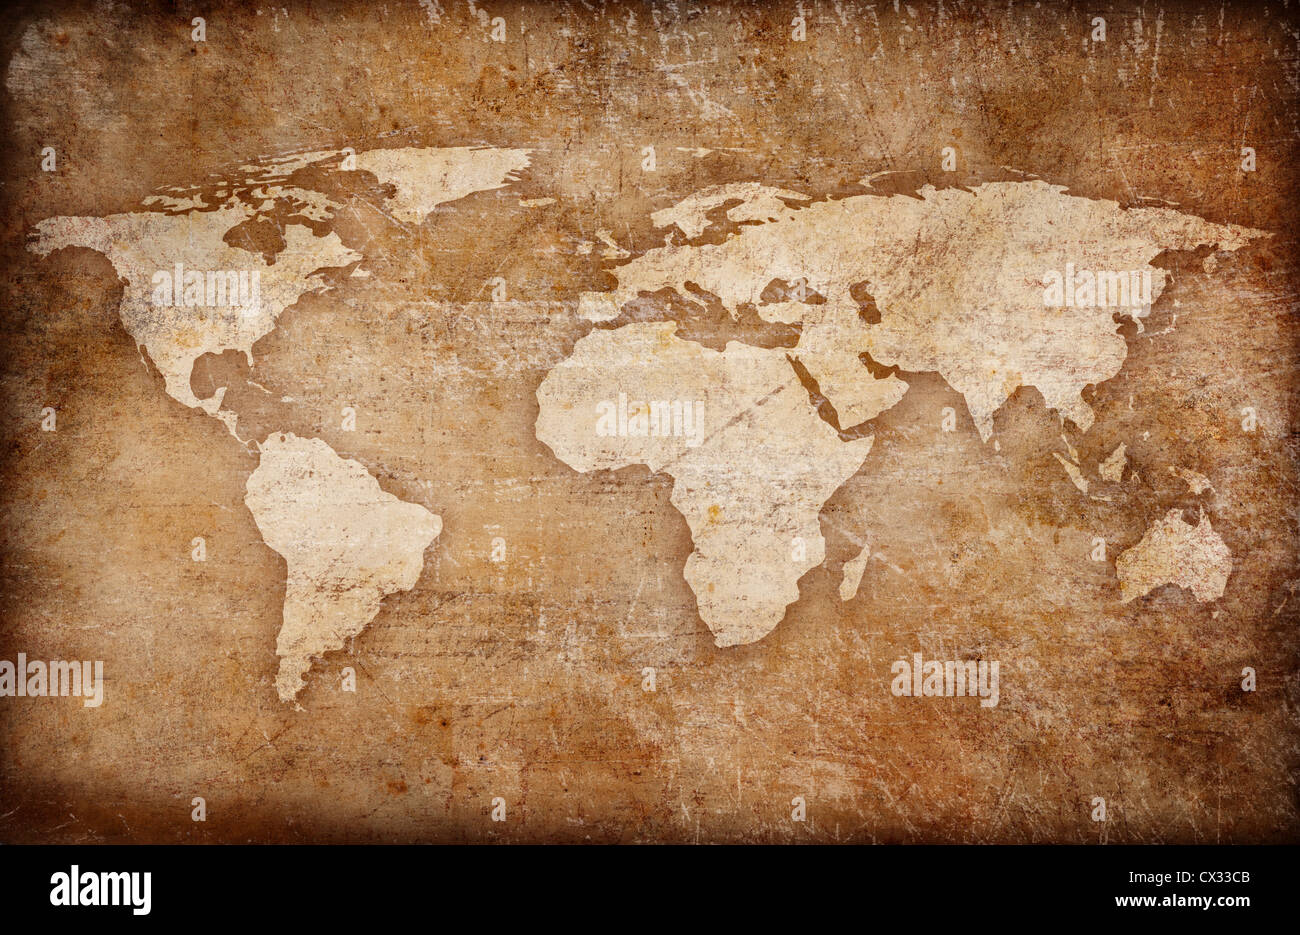 Grunge world map background Banque D'Images